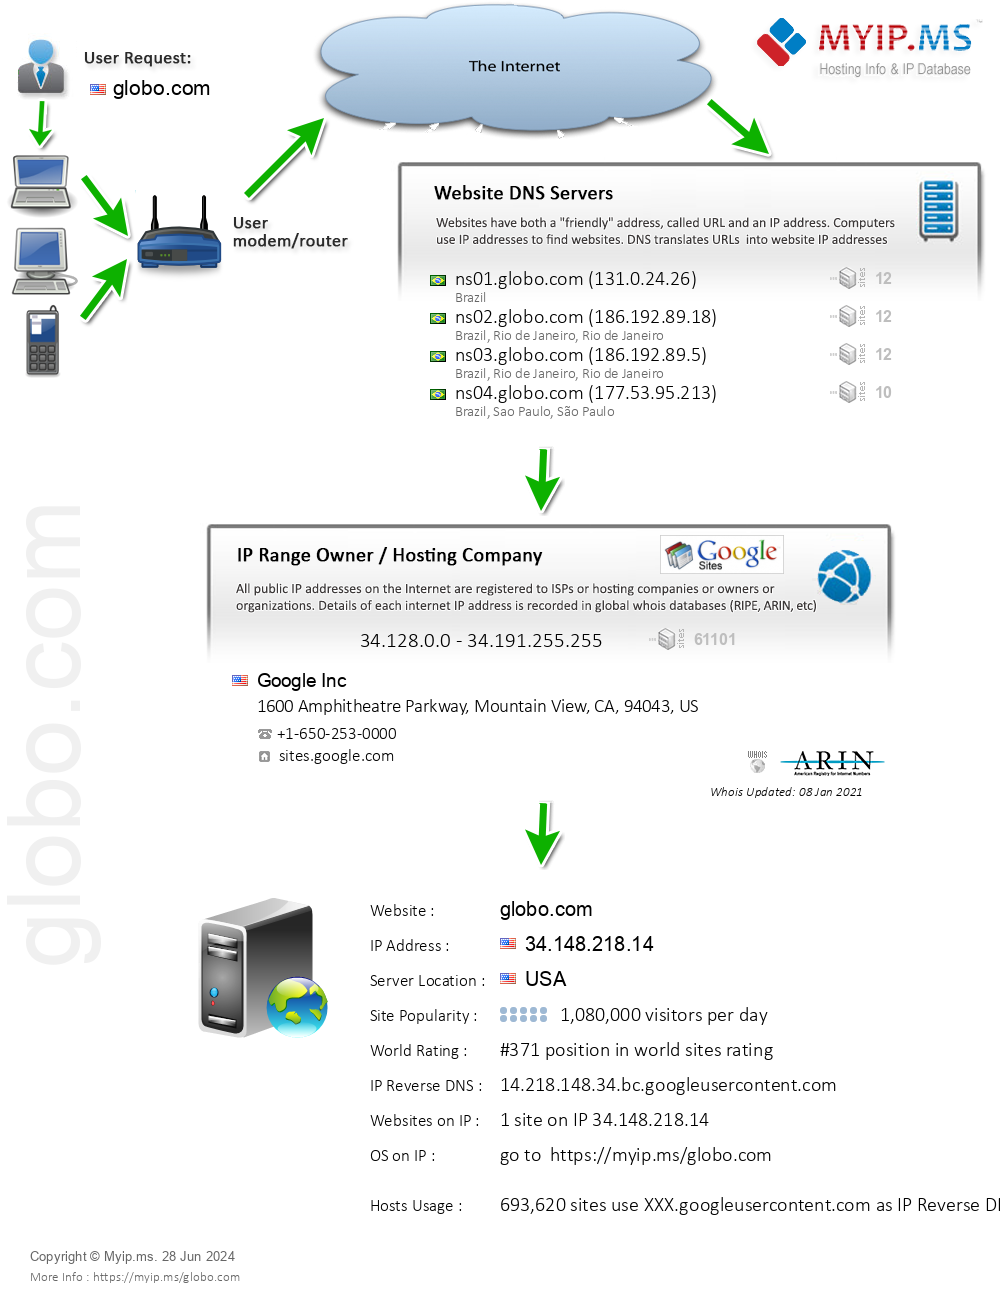 Globo.com - Website Hosting Visual IP Diagram